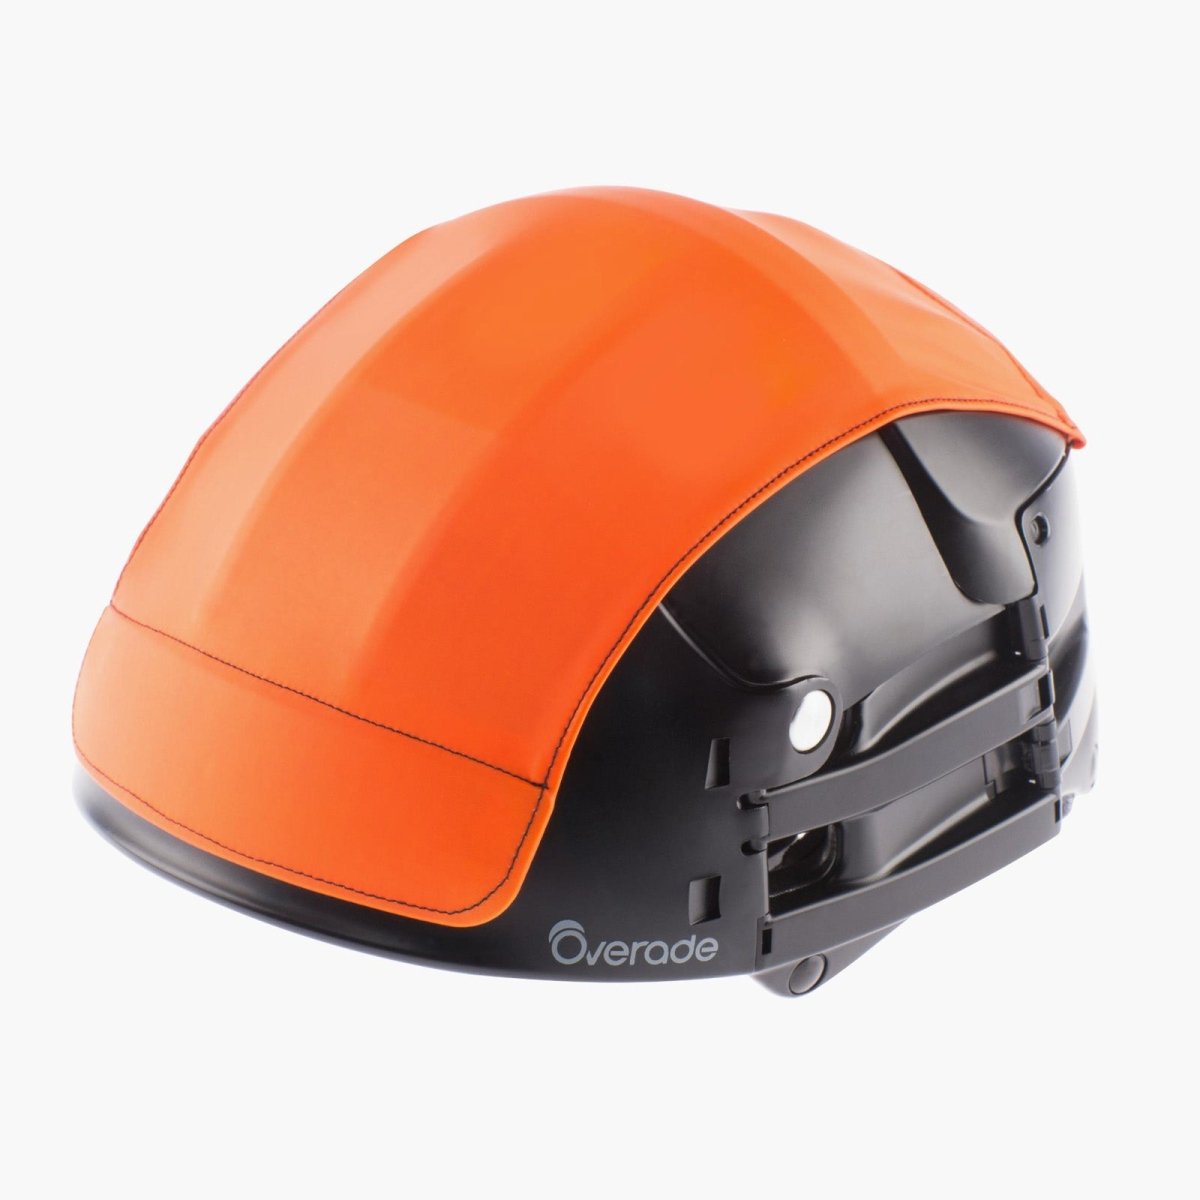 Couvre-casque pluie amovible pour casque Overade PLIXI - Overade #couleur_Orange